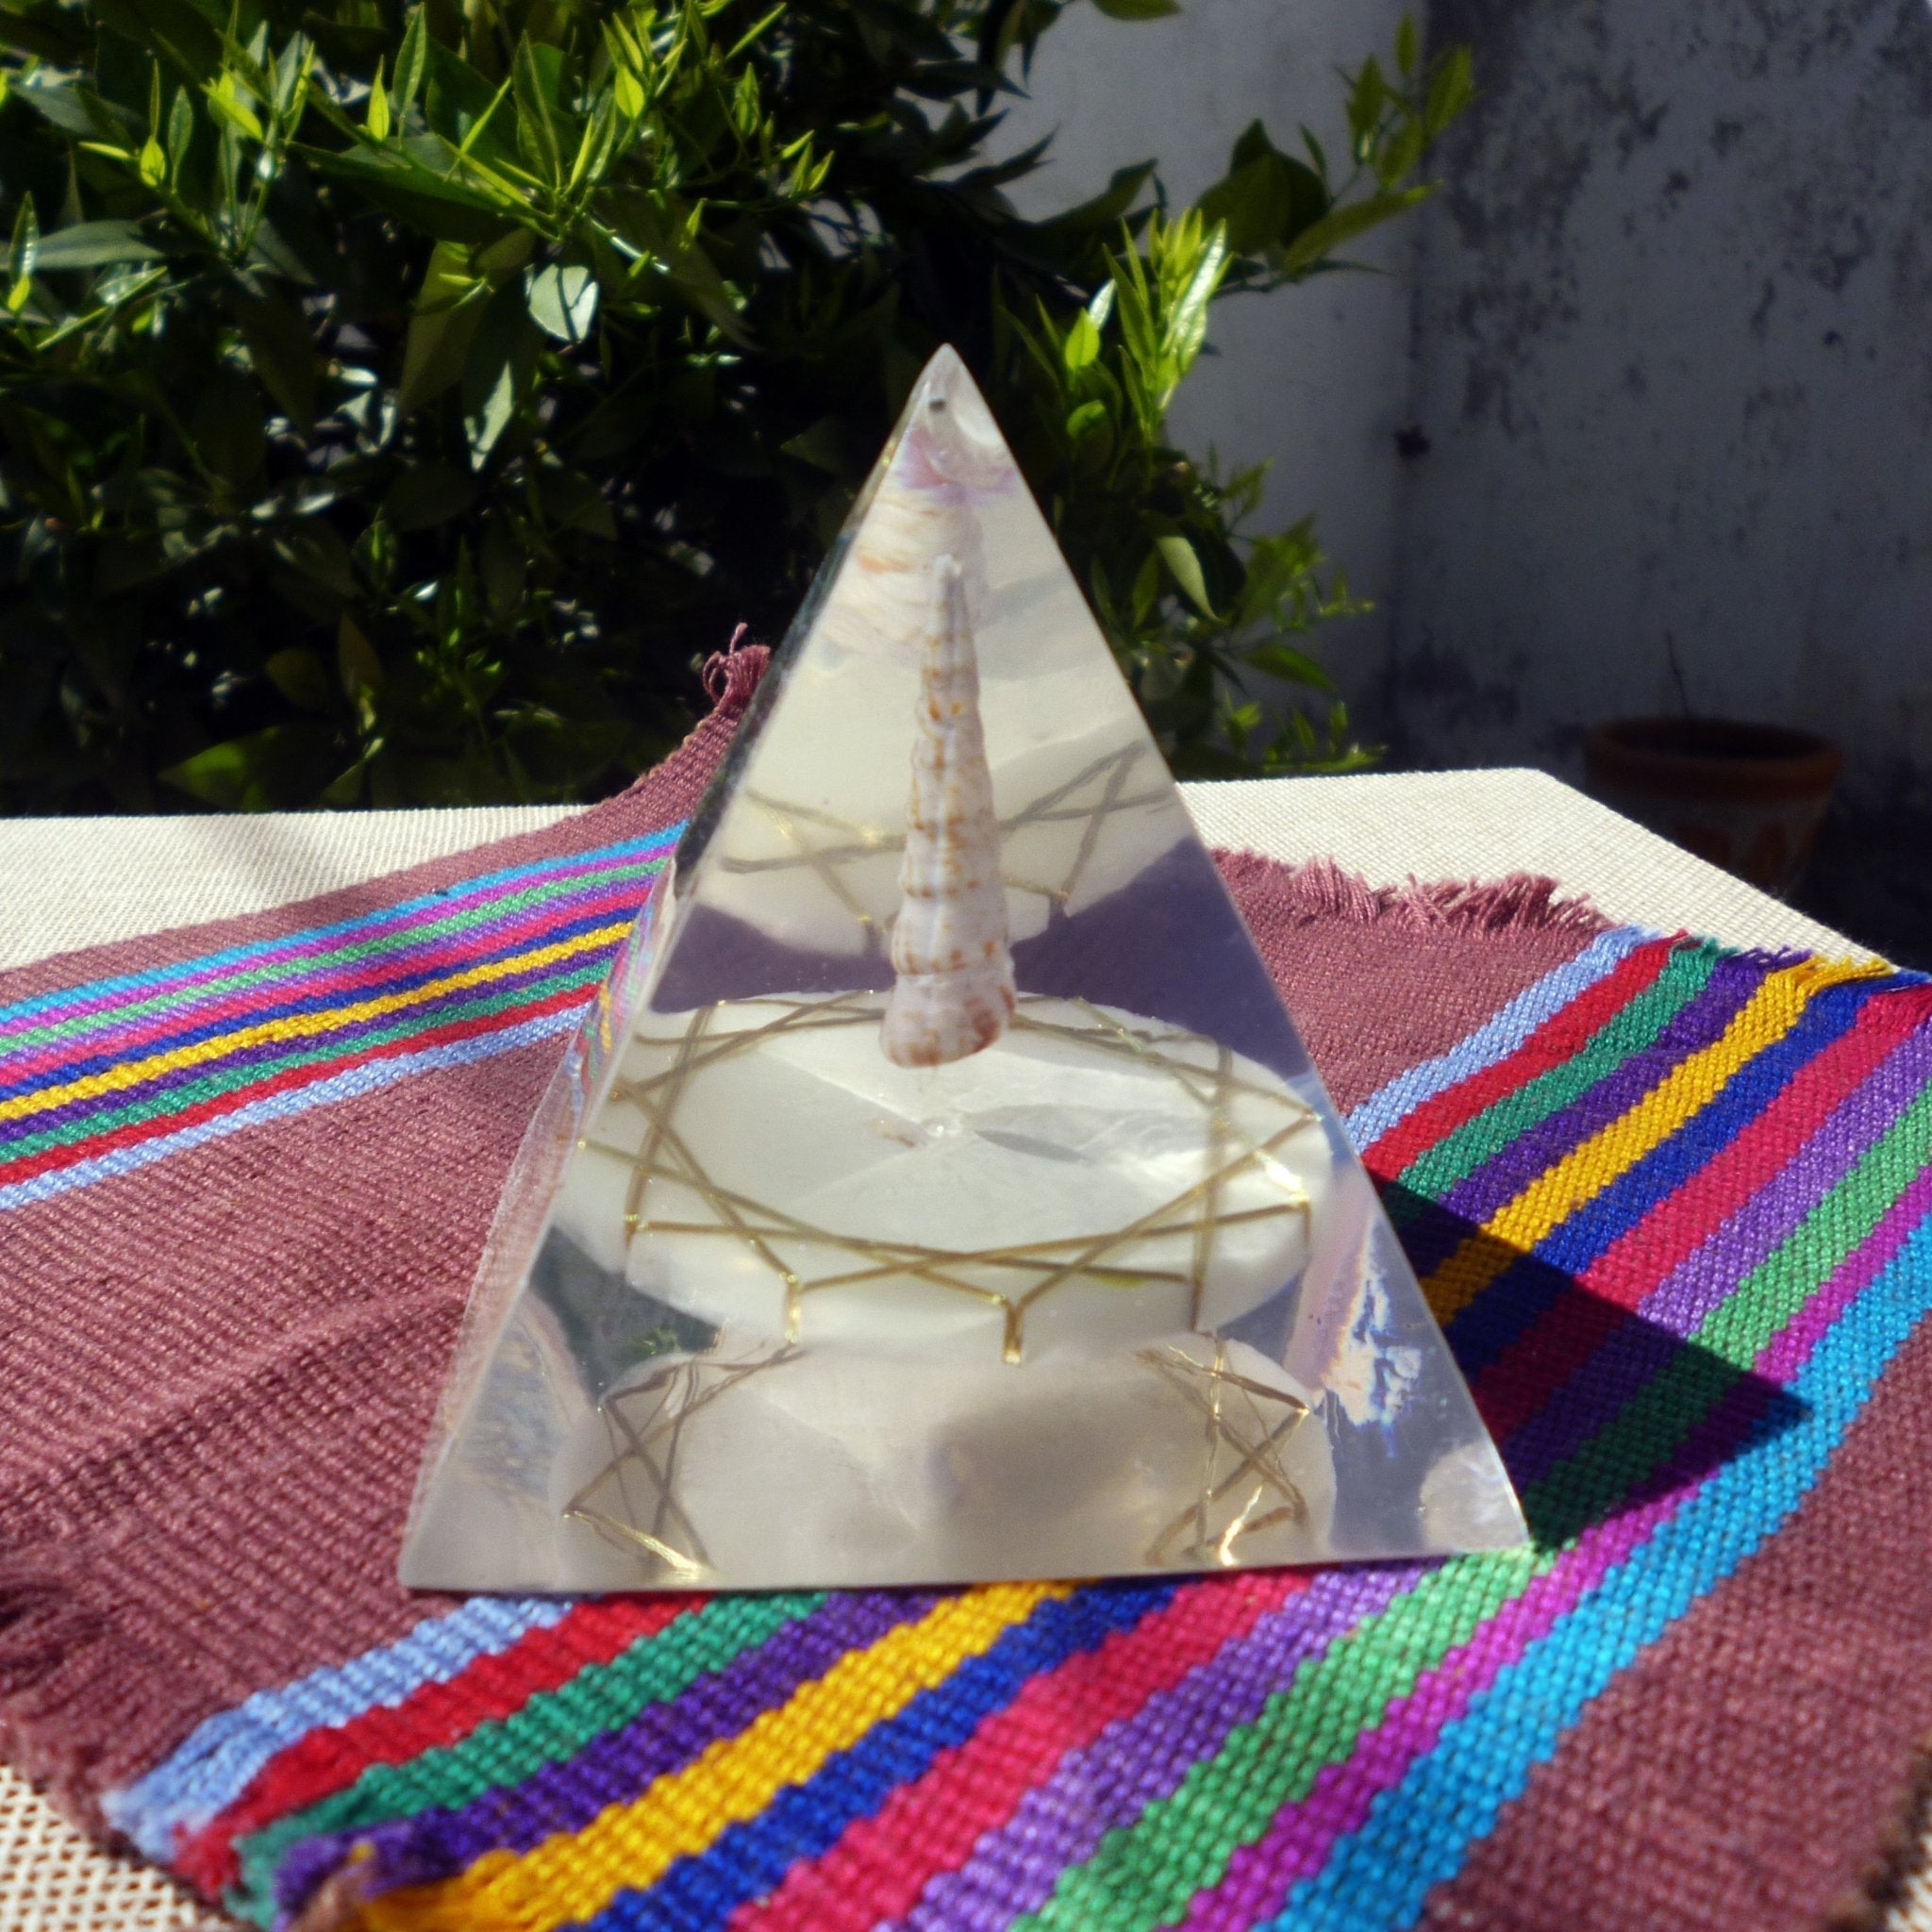 Pirámide Zipolite - Metayantra México